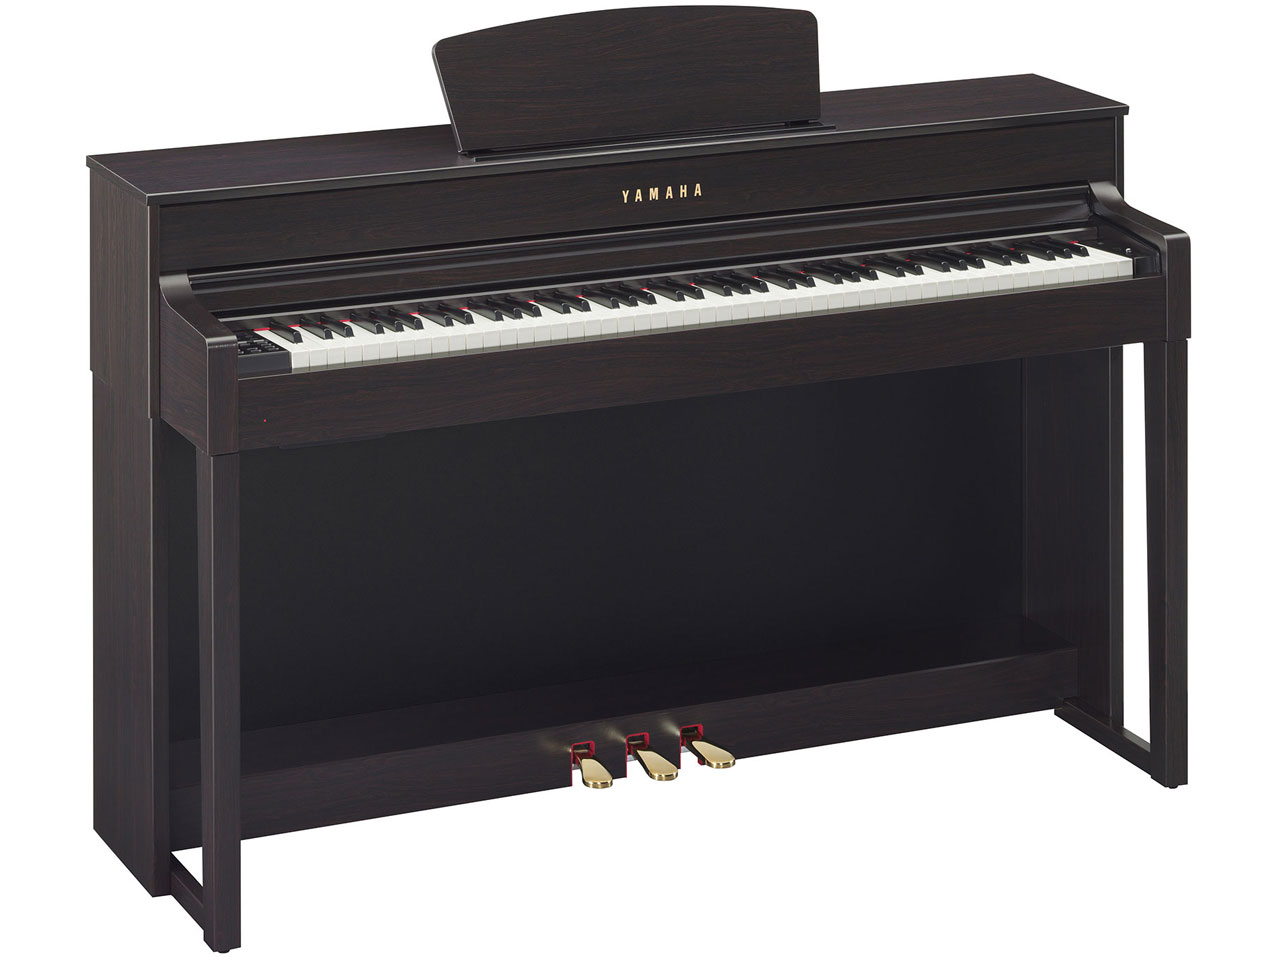 YAMAHA クラビノーバ 電子ピアノ CLP-535